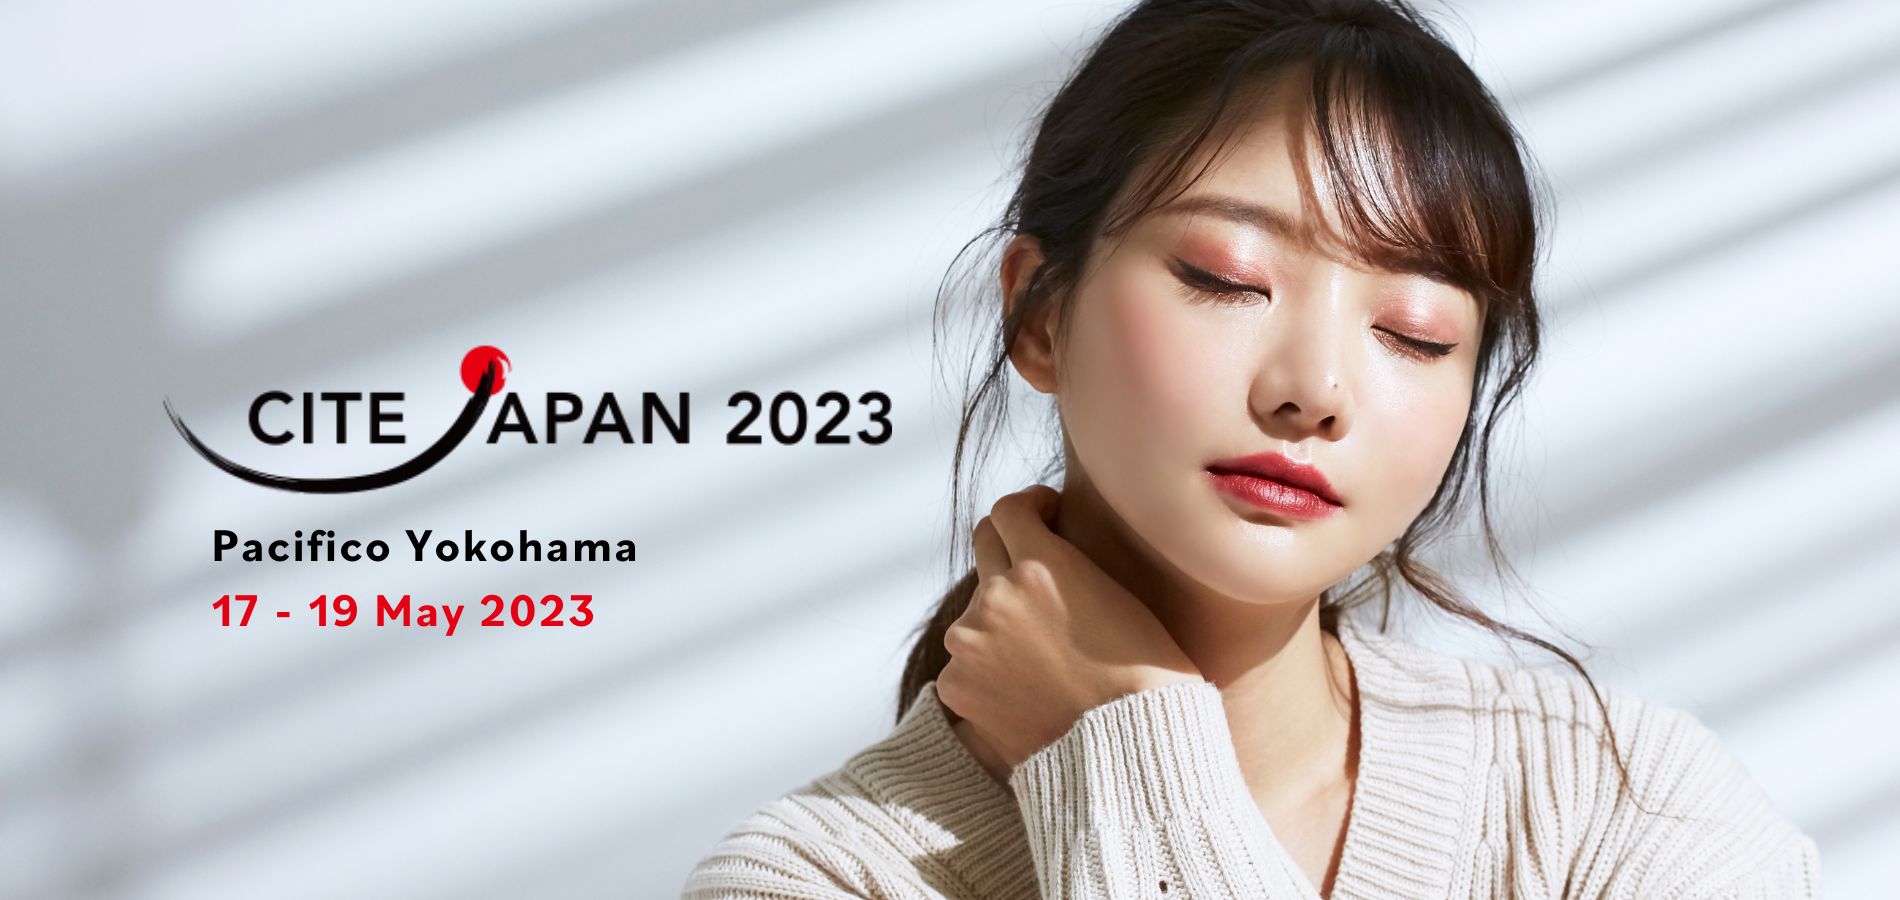 CITE Japan 2023 Website Imagem em Destaque